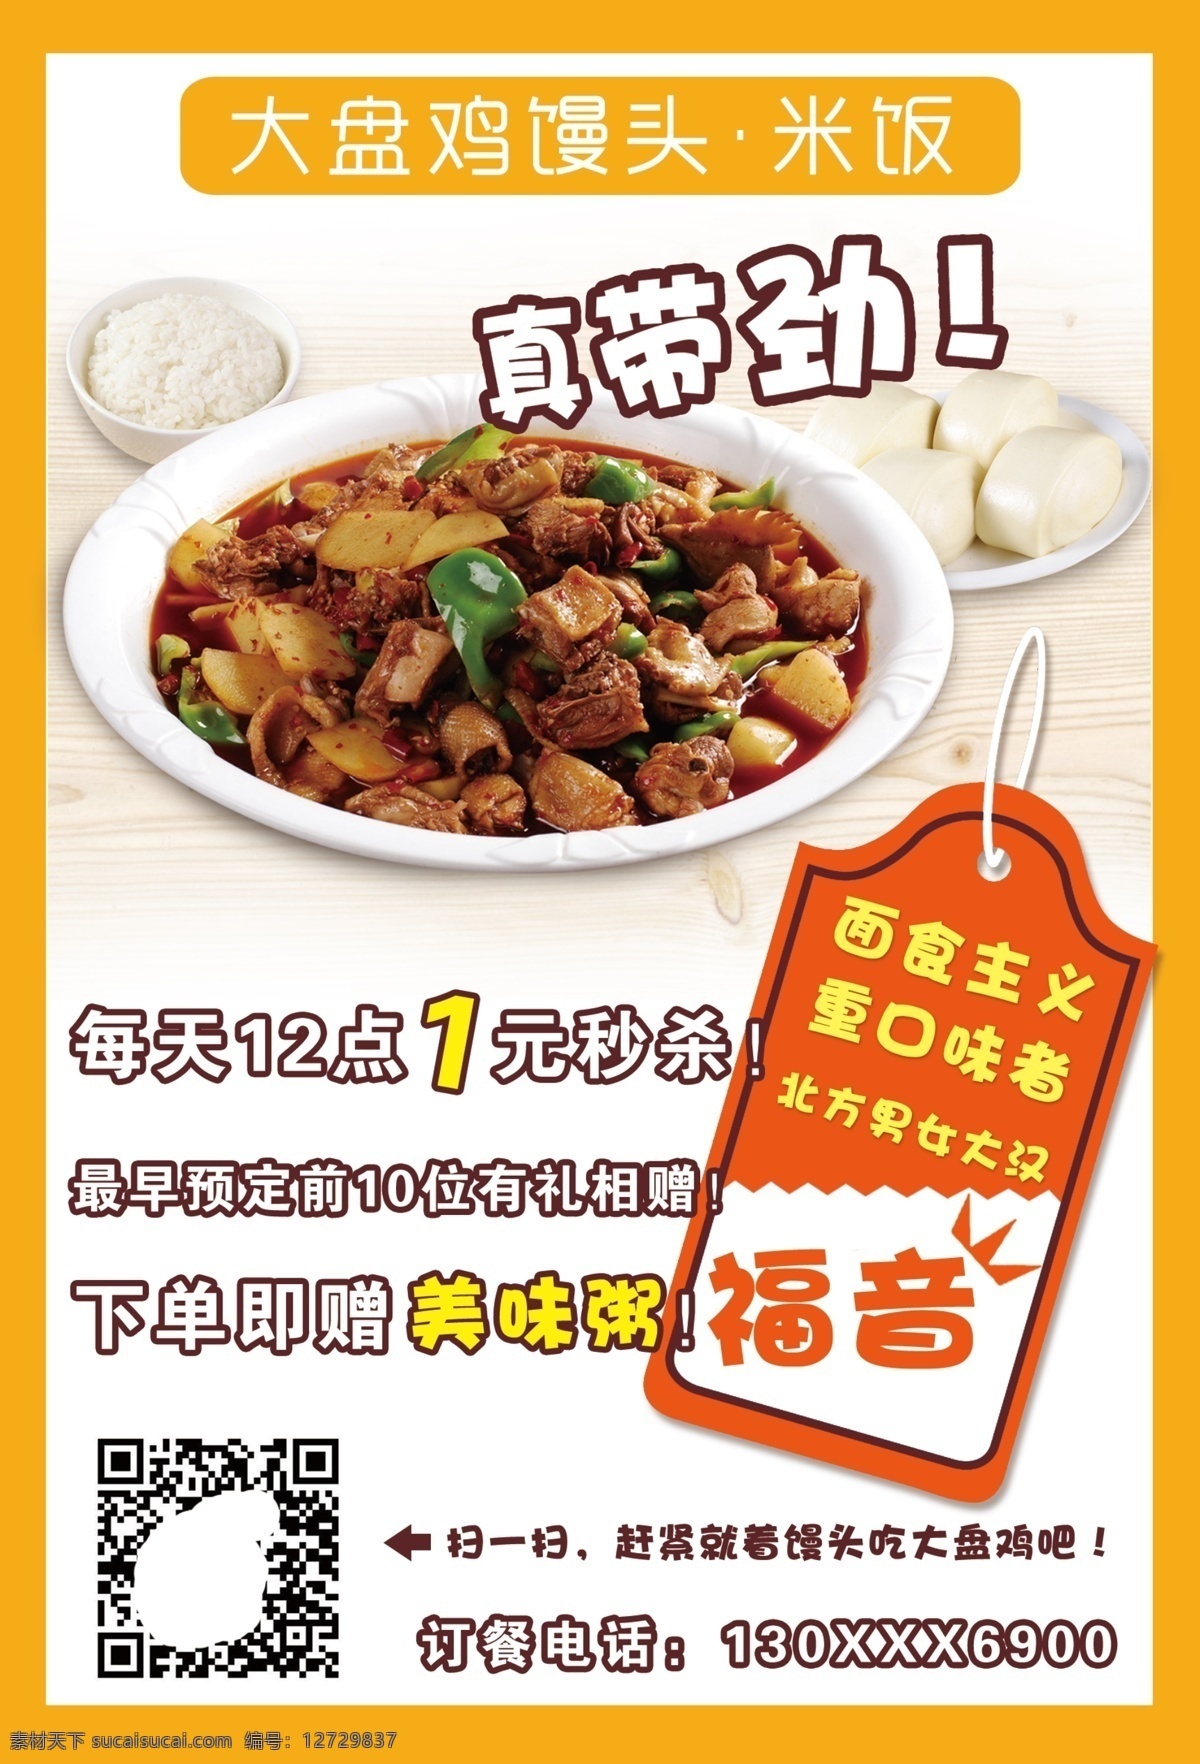 餐饮美食 广告宣传 大盘鸡 馒头 米饭 秒杀 真带劲 餐饮 美食 海报 宣传 白色